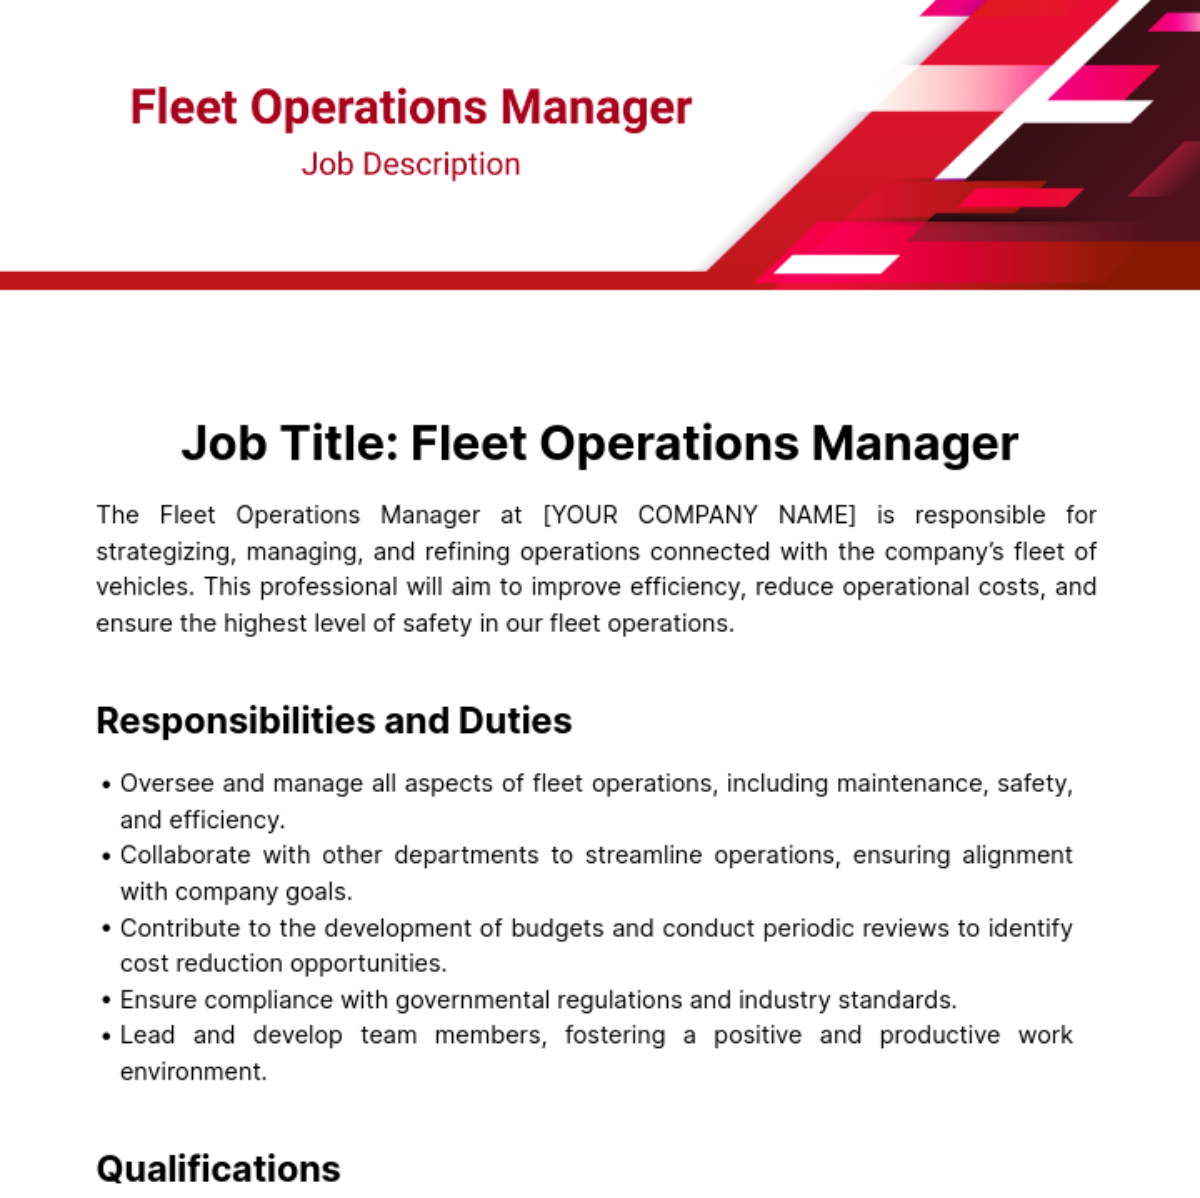 Fleet Operations Manager Job Description Template